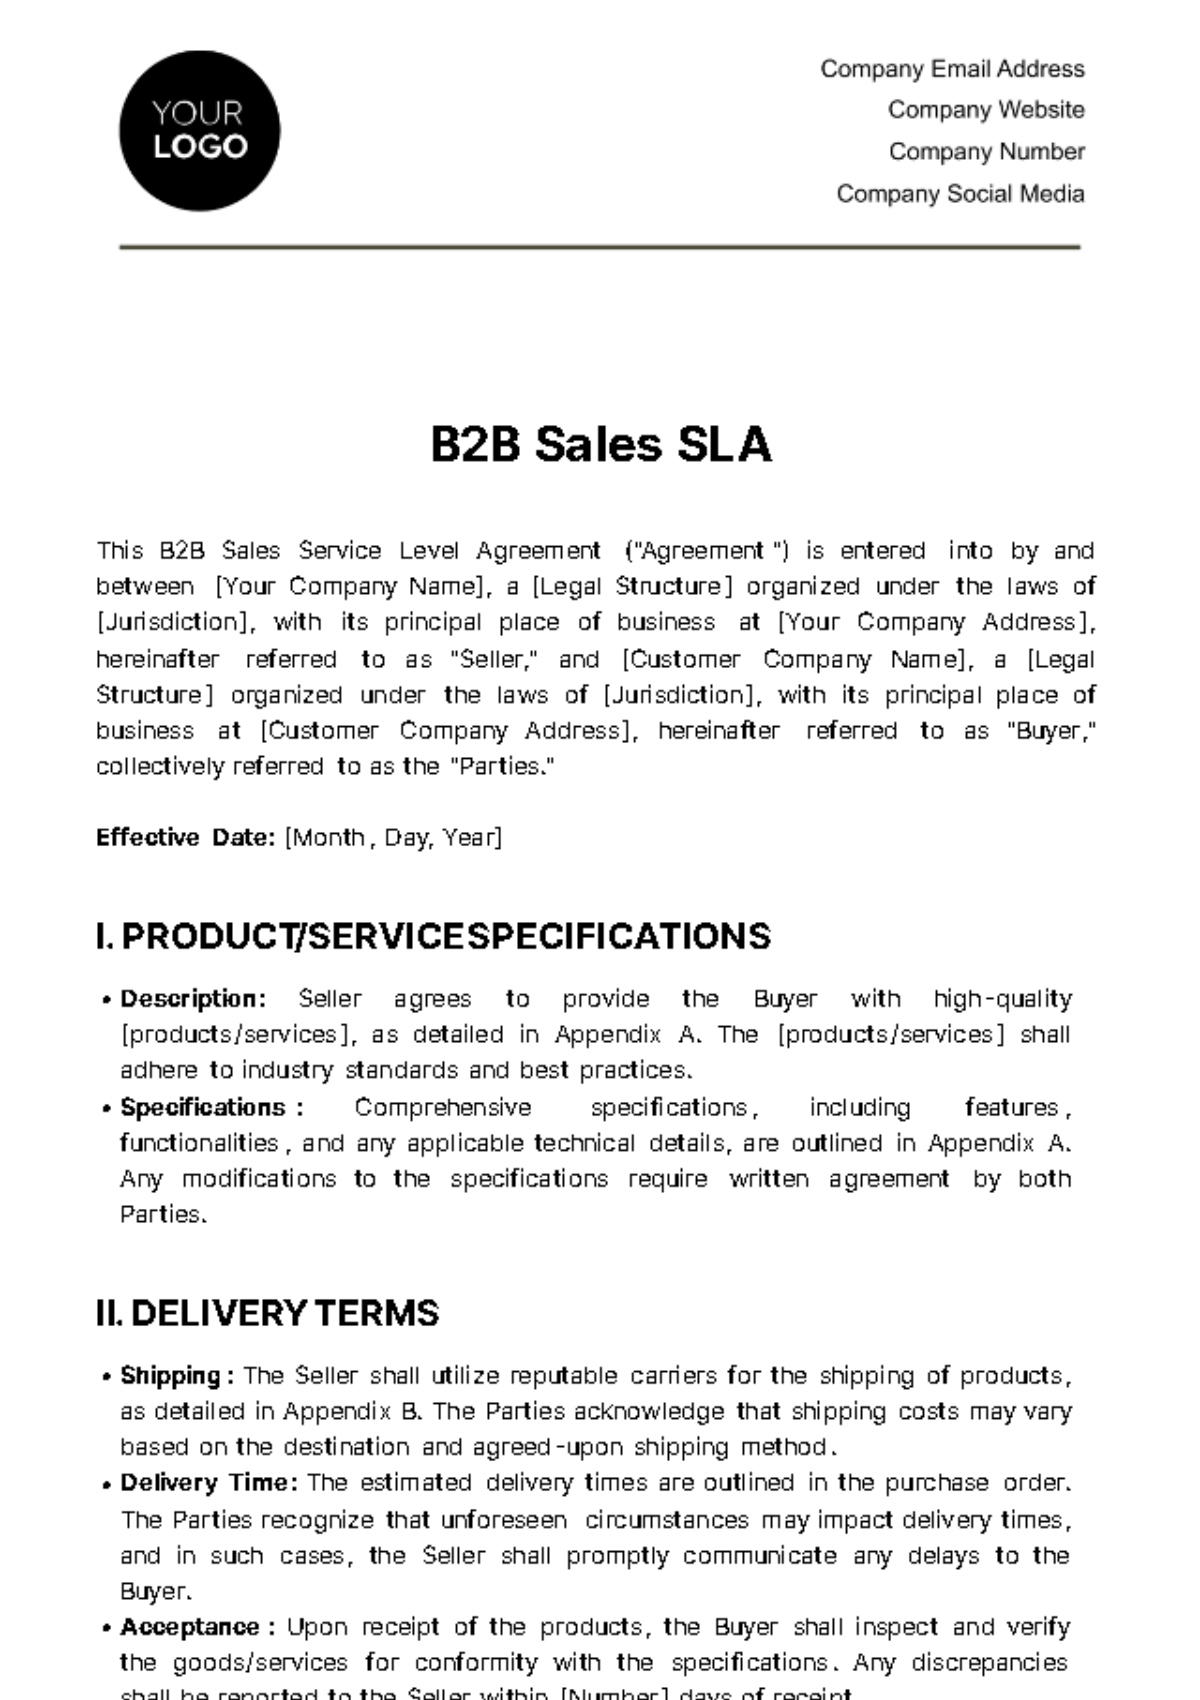 B2B Sales SLA Template